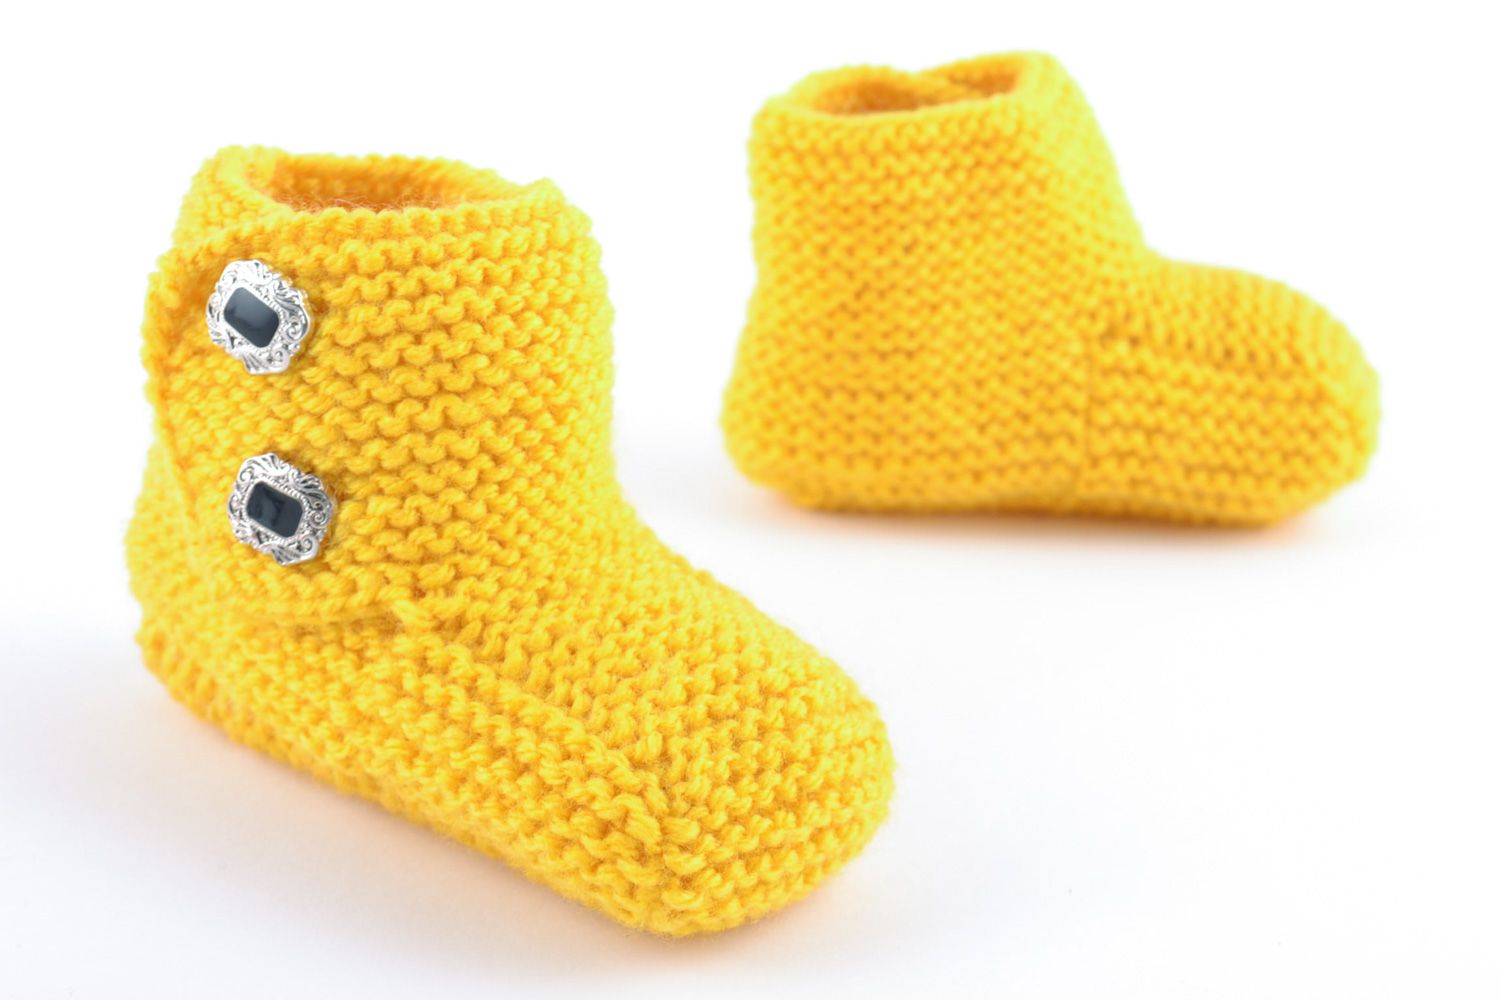 Petits chaussons de bébé tricotés jaunes faits main chauds originaux éclatants photo 3